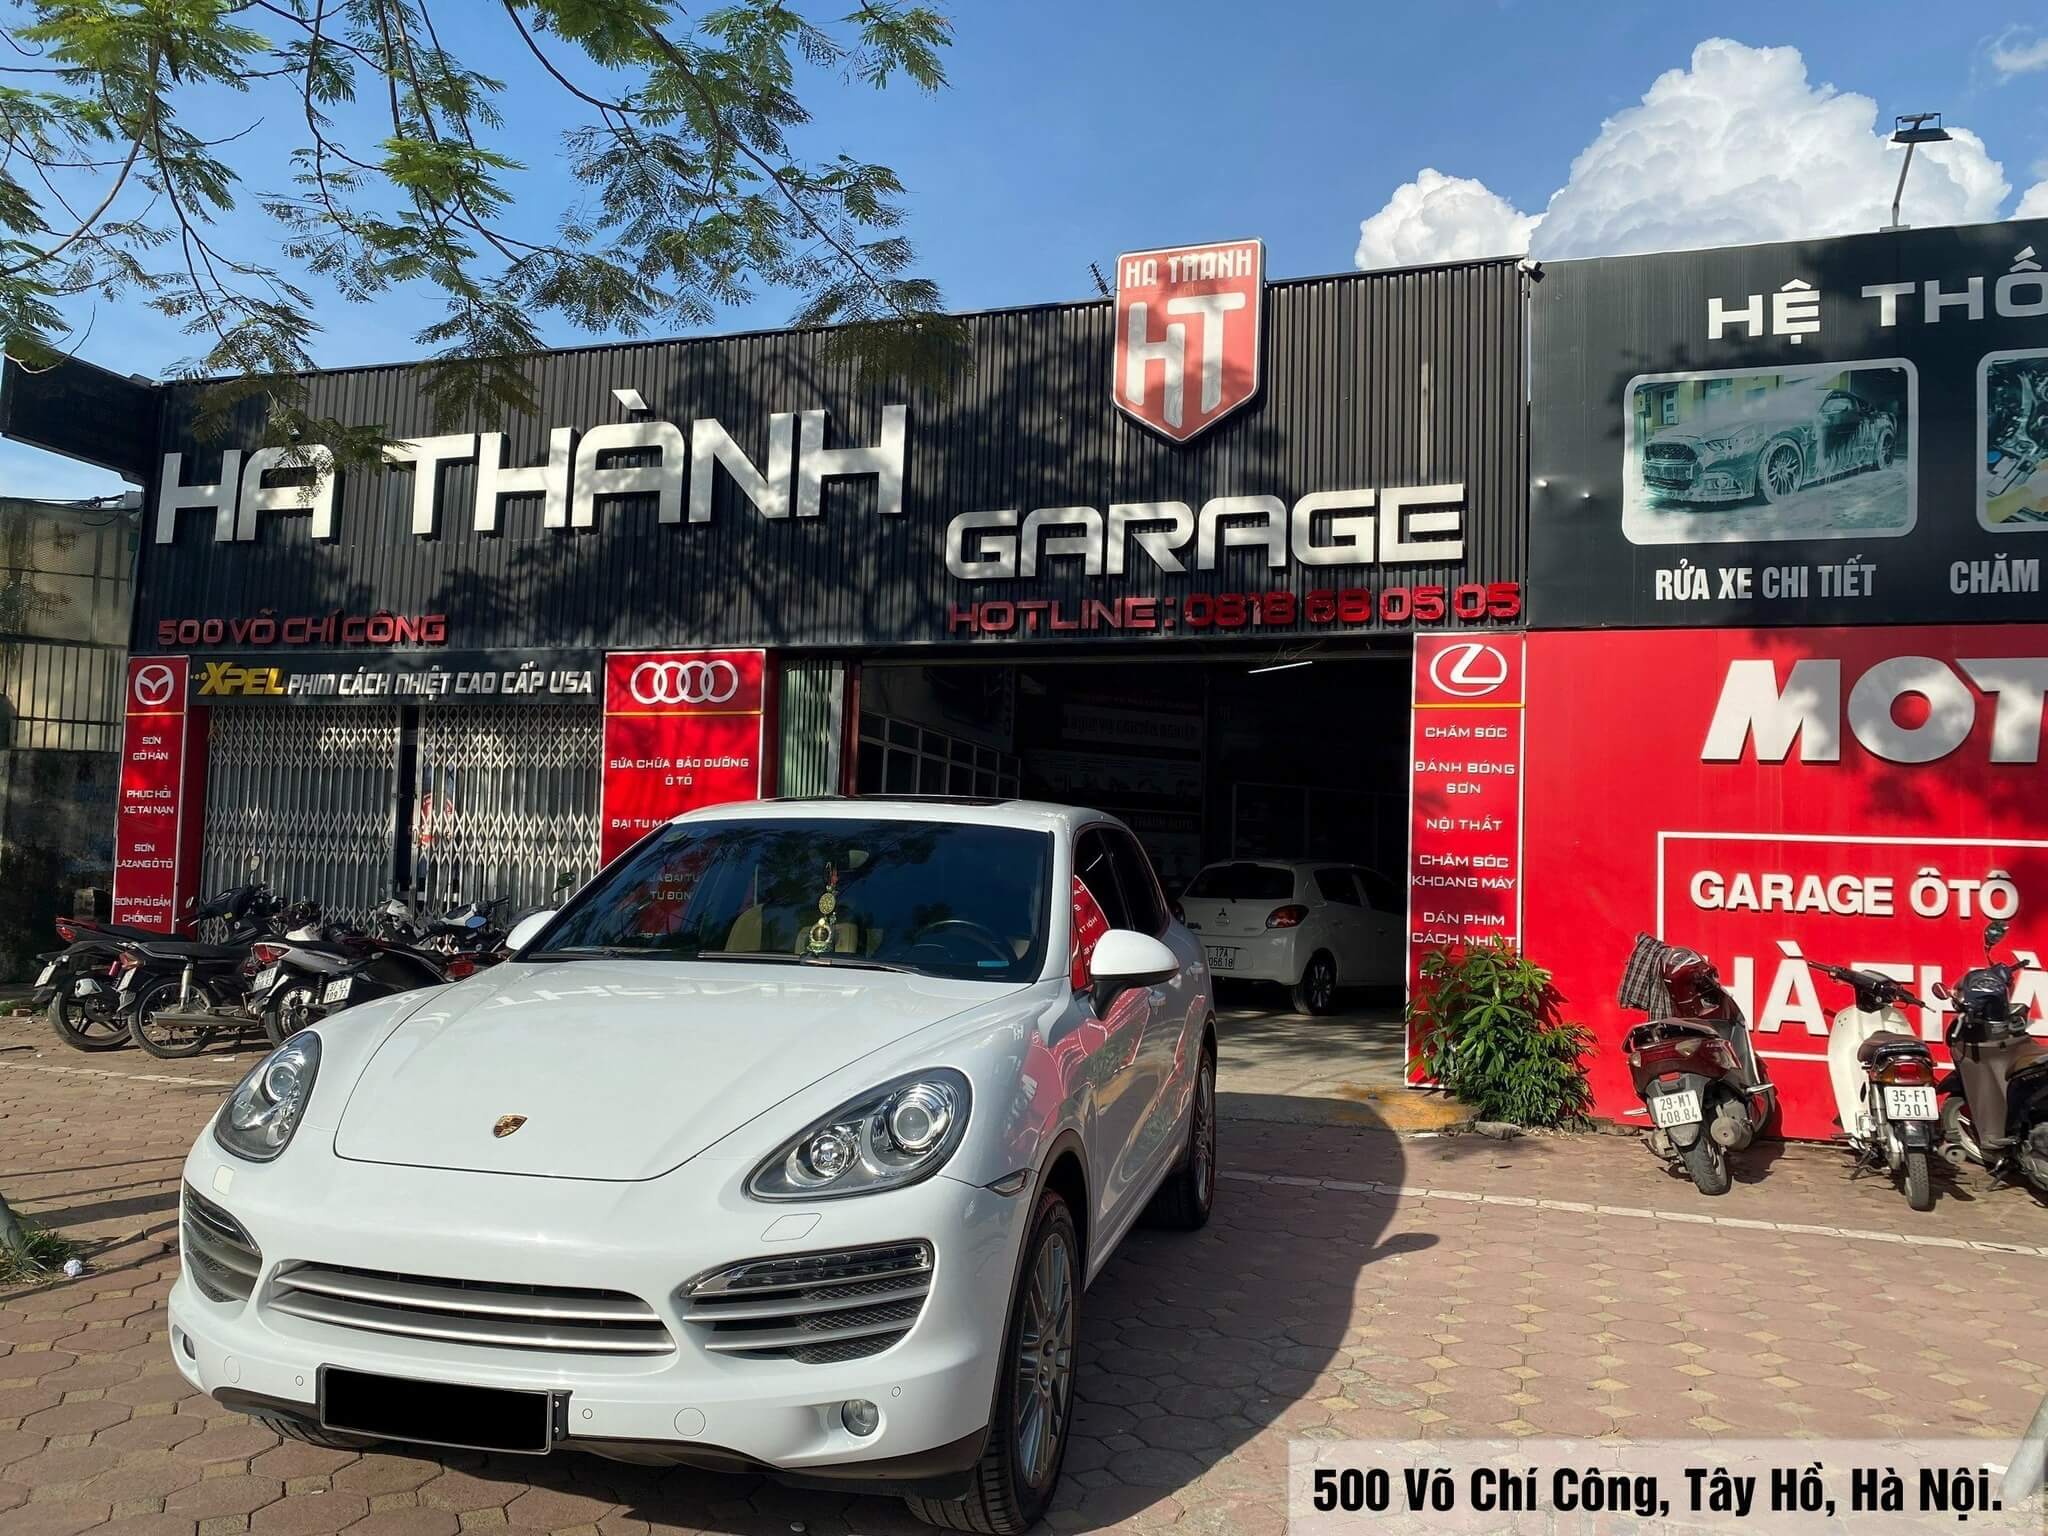 Hà Thành Garage - đơn vị bảo dưỡng, sửa chữa ô tô uy tín tại Hà Nội